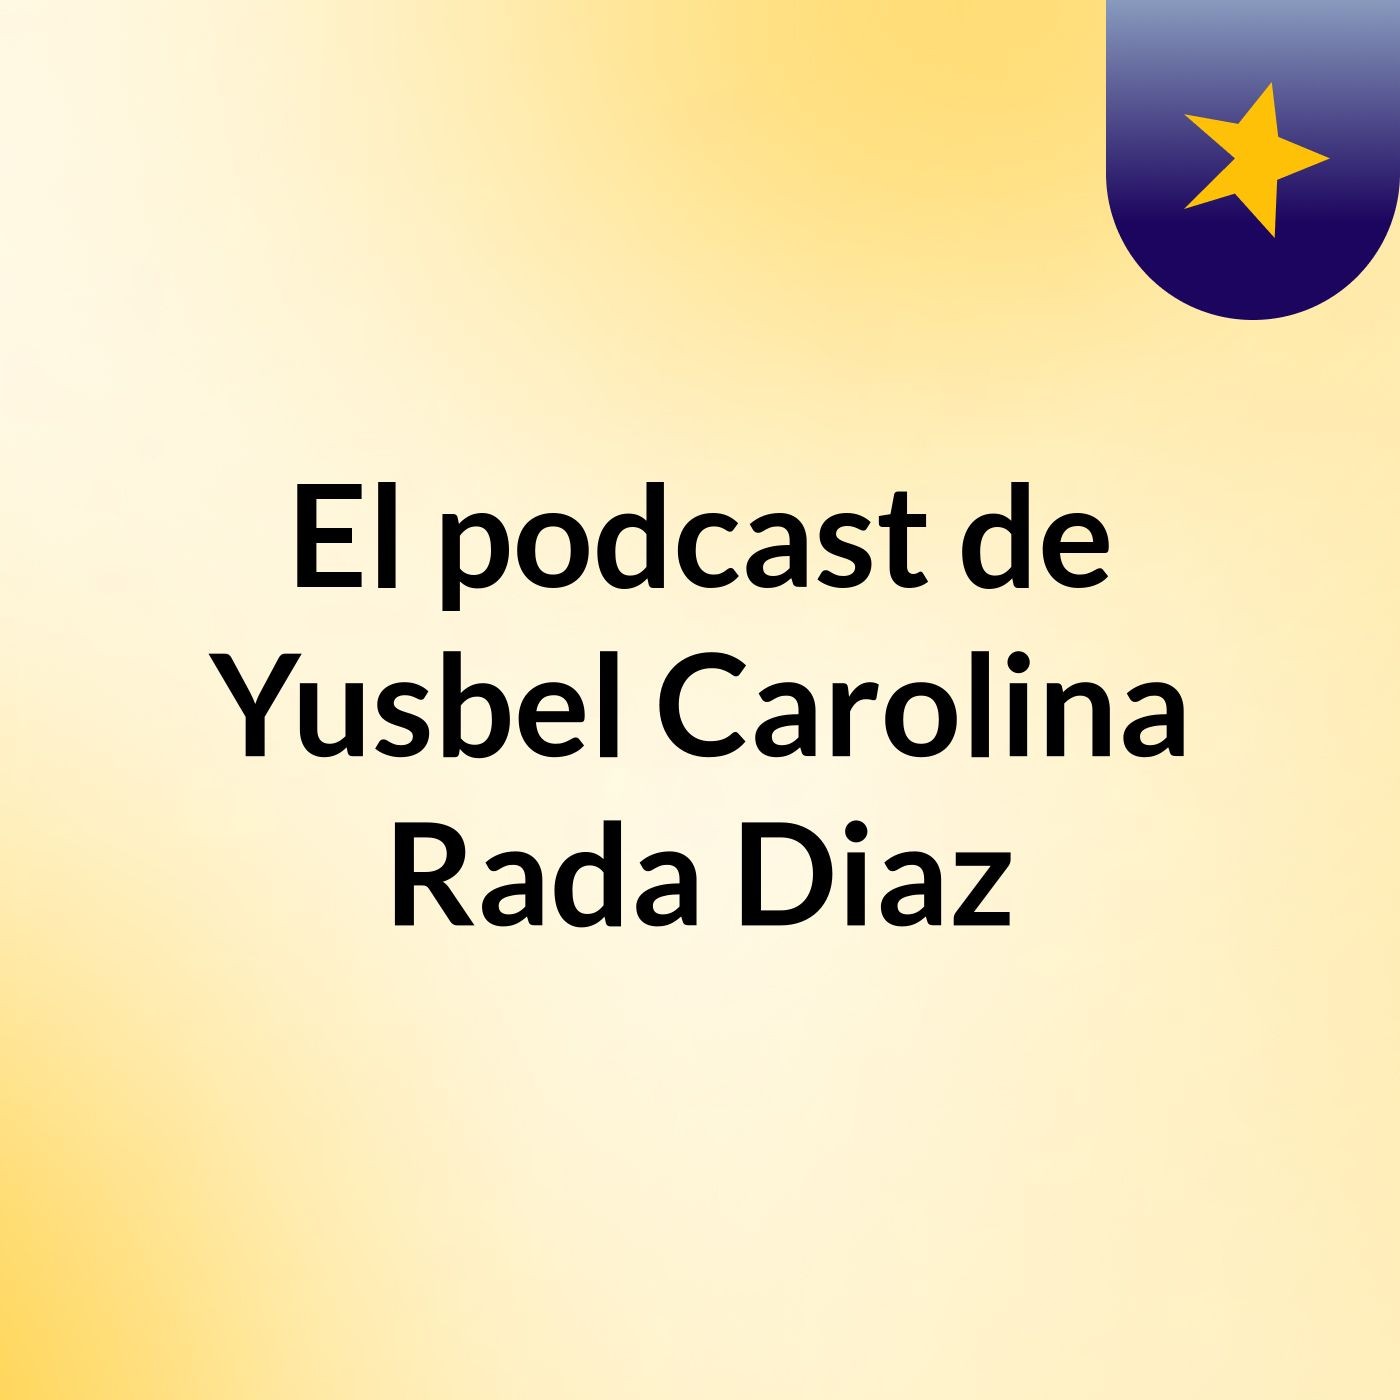 El podcast de Yusbel Carolina Rada Diaz